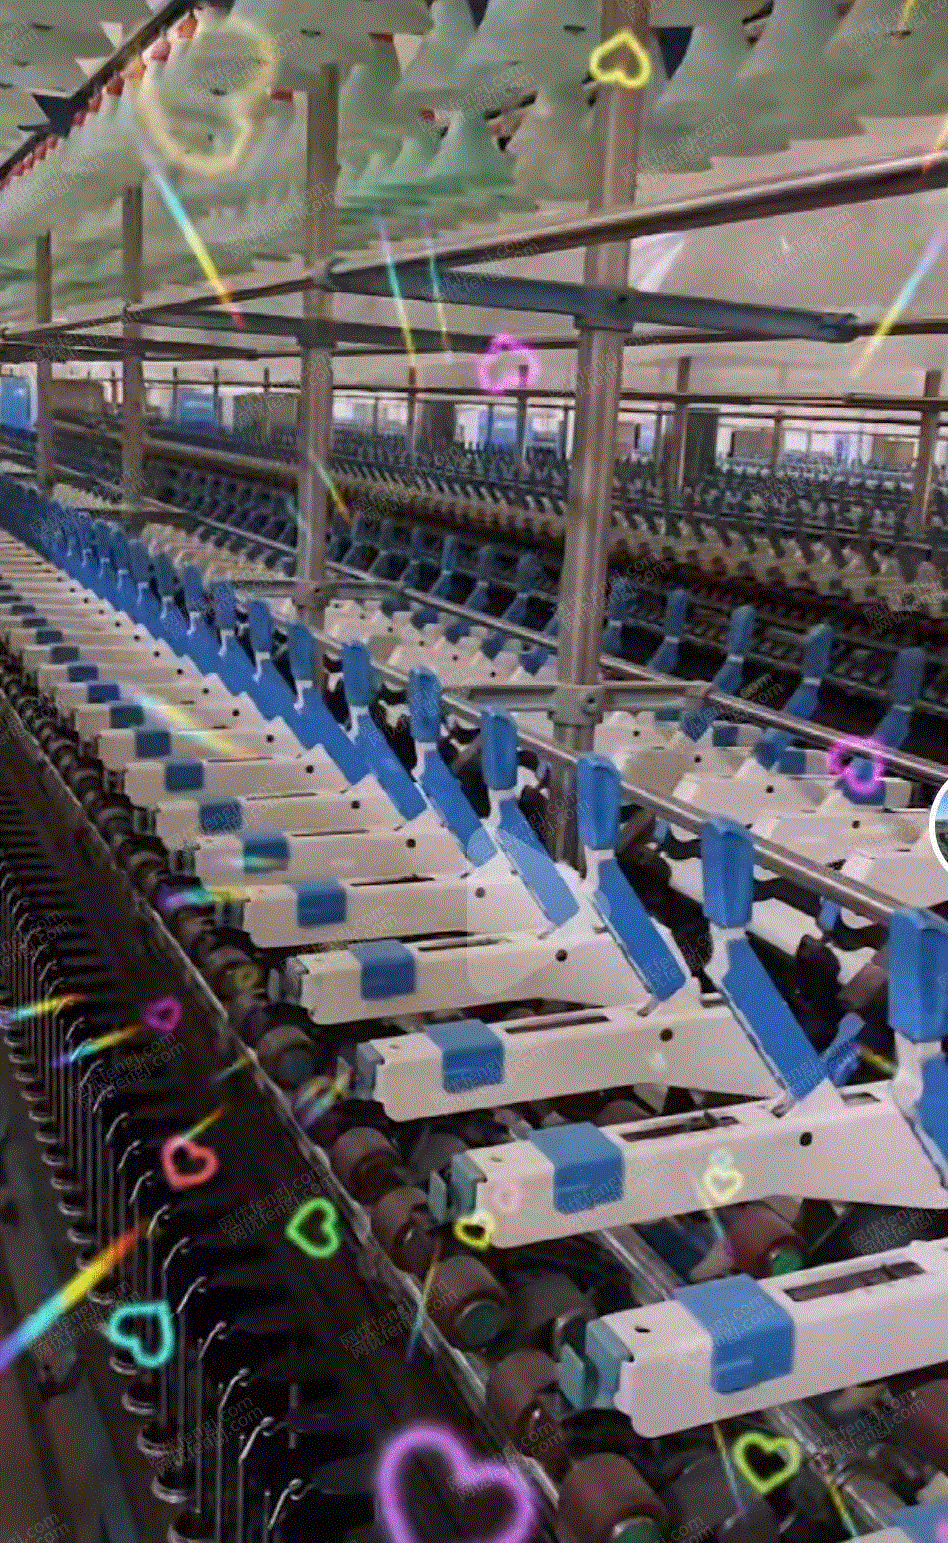 其它二手纺织机械出售